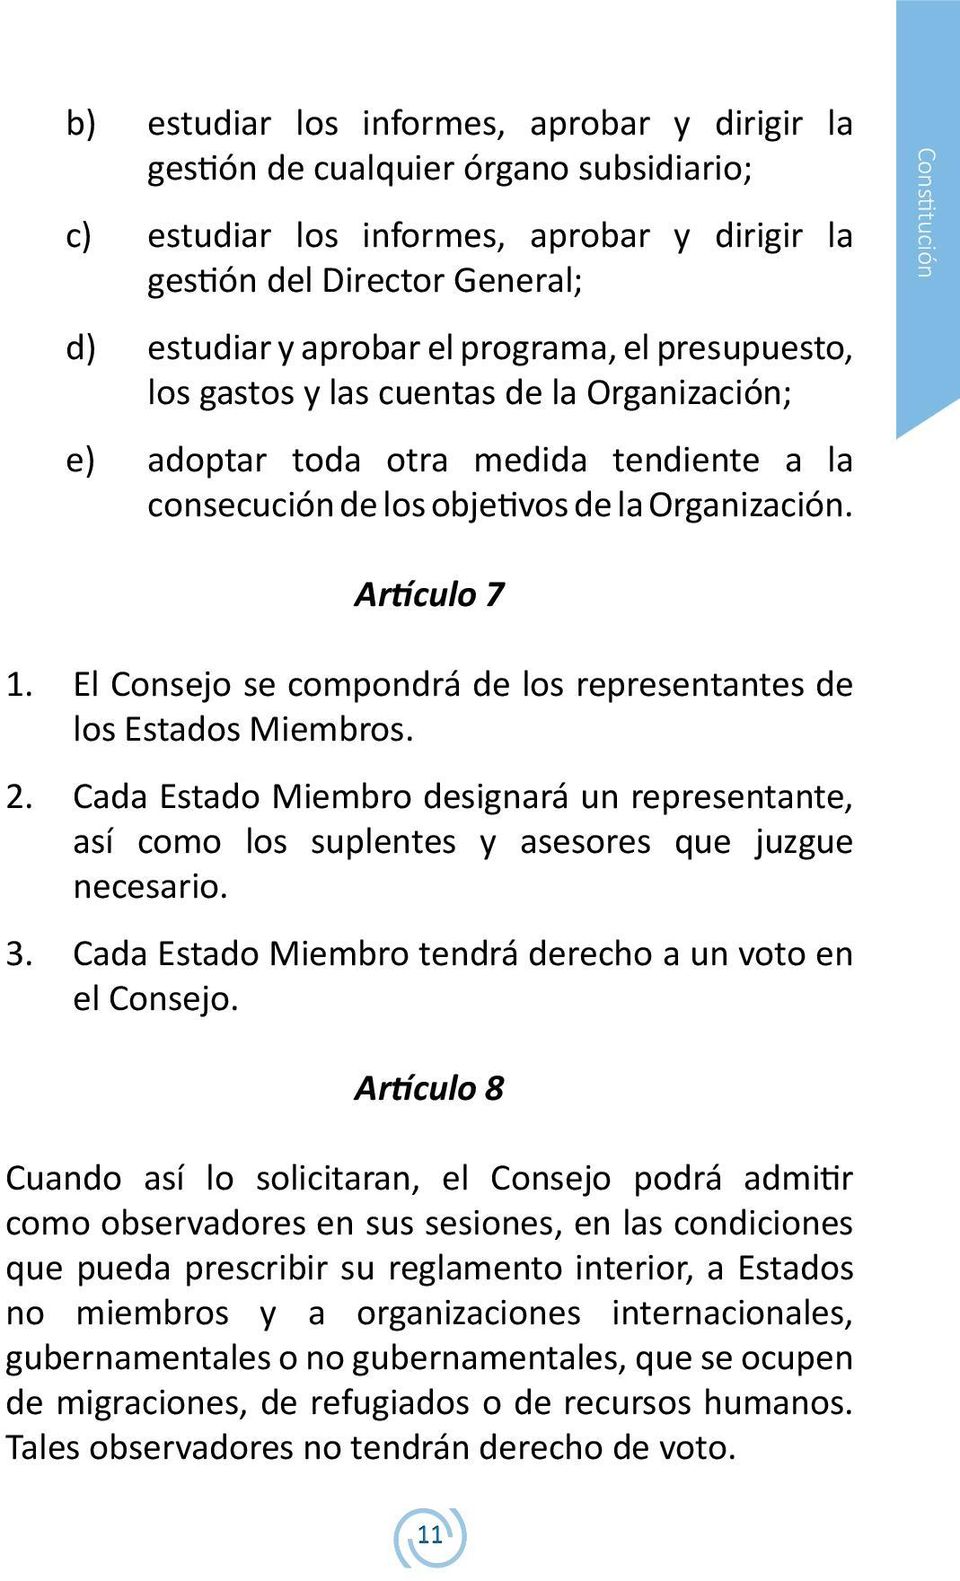 El Consejo se compondrá de los representantes de los Estados Miembros. 2. Cada Estado Miembro designará un representante, así como los suplentes y asesores que juzgue necesario. 3.